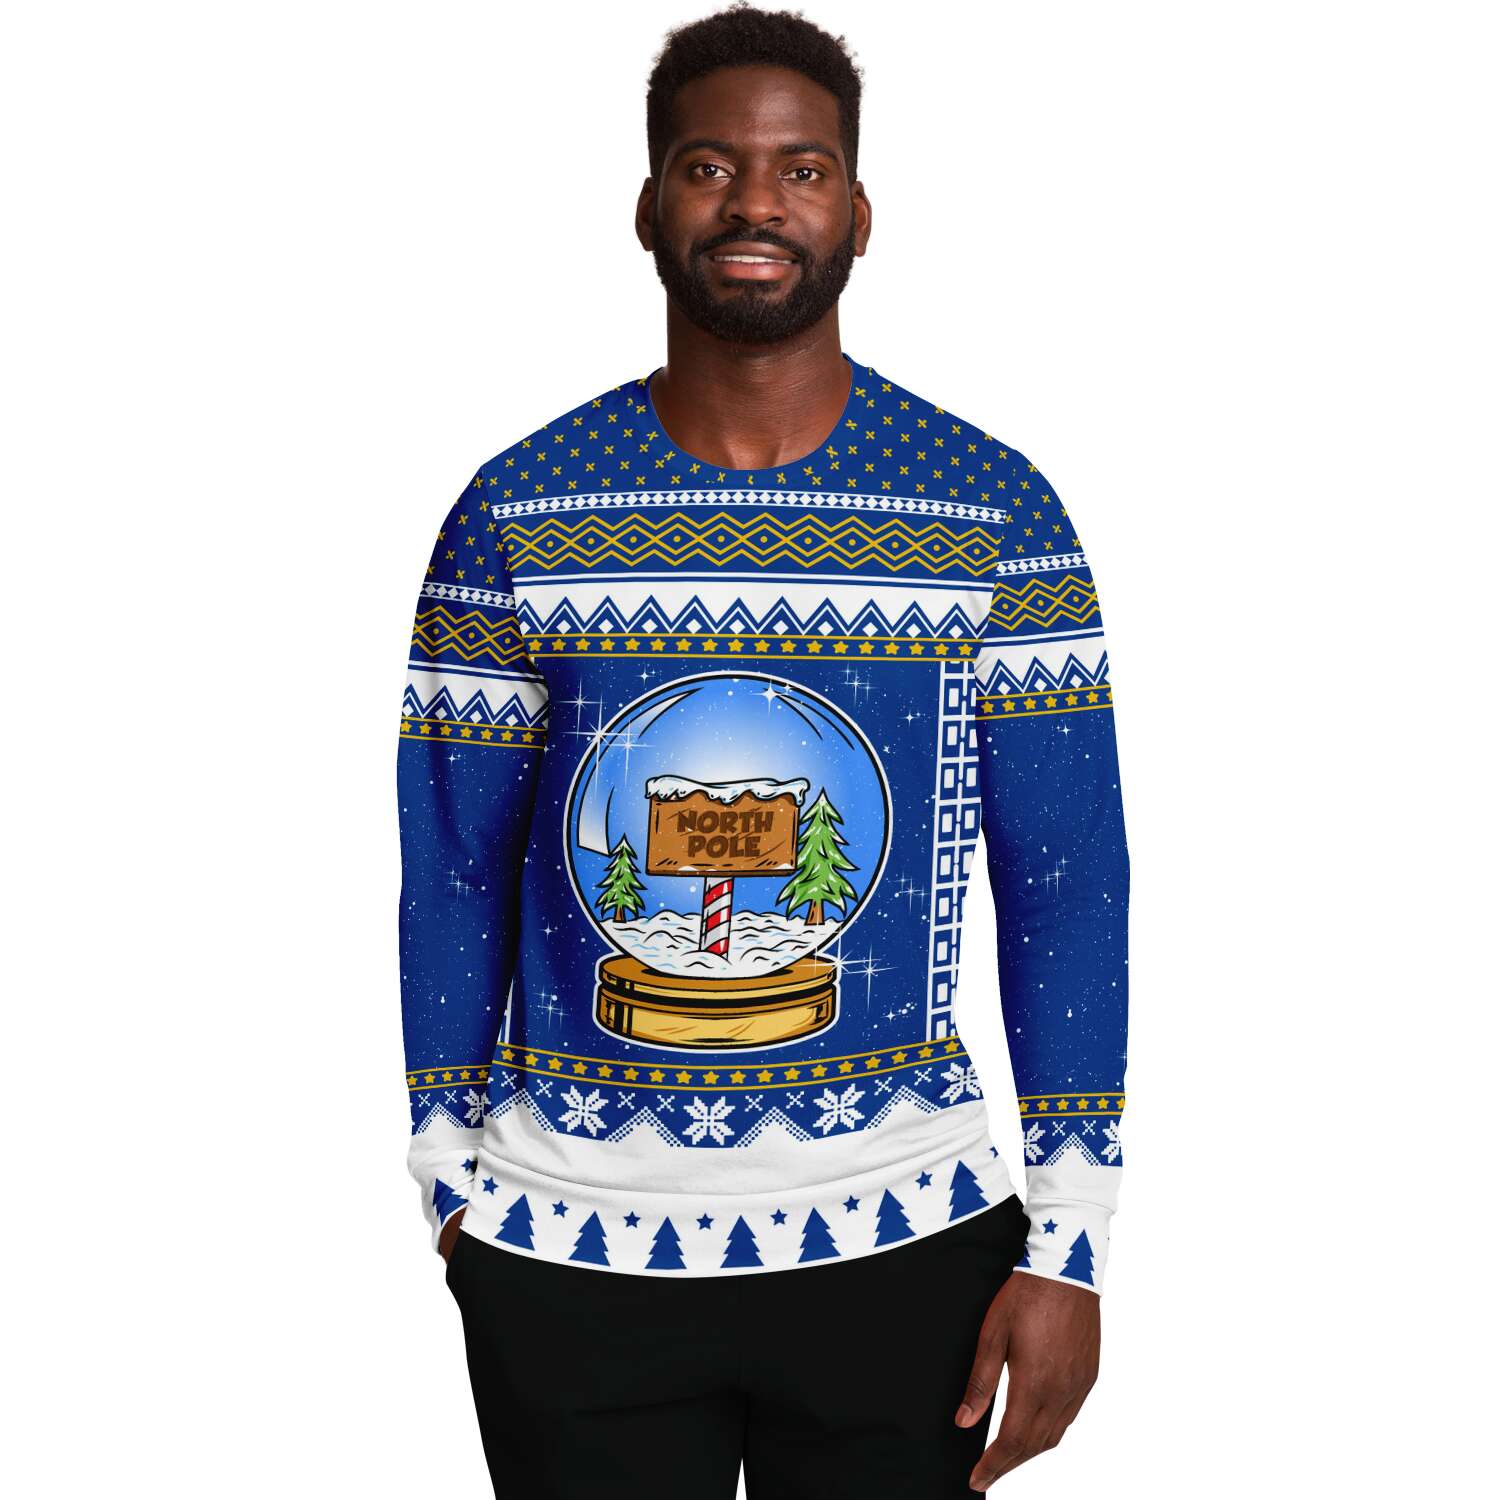 Snow Globe Sweatshirt | Unisex Ugly Christmas Sweater, Xmas Sweater, Holiday Sweater, Festive Sweater, Funny Sweater, Funny Party Shirt